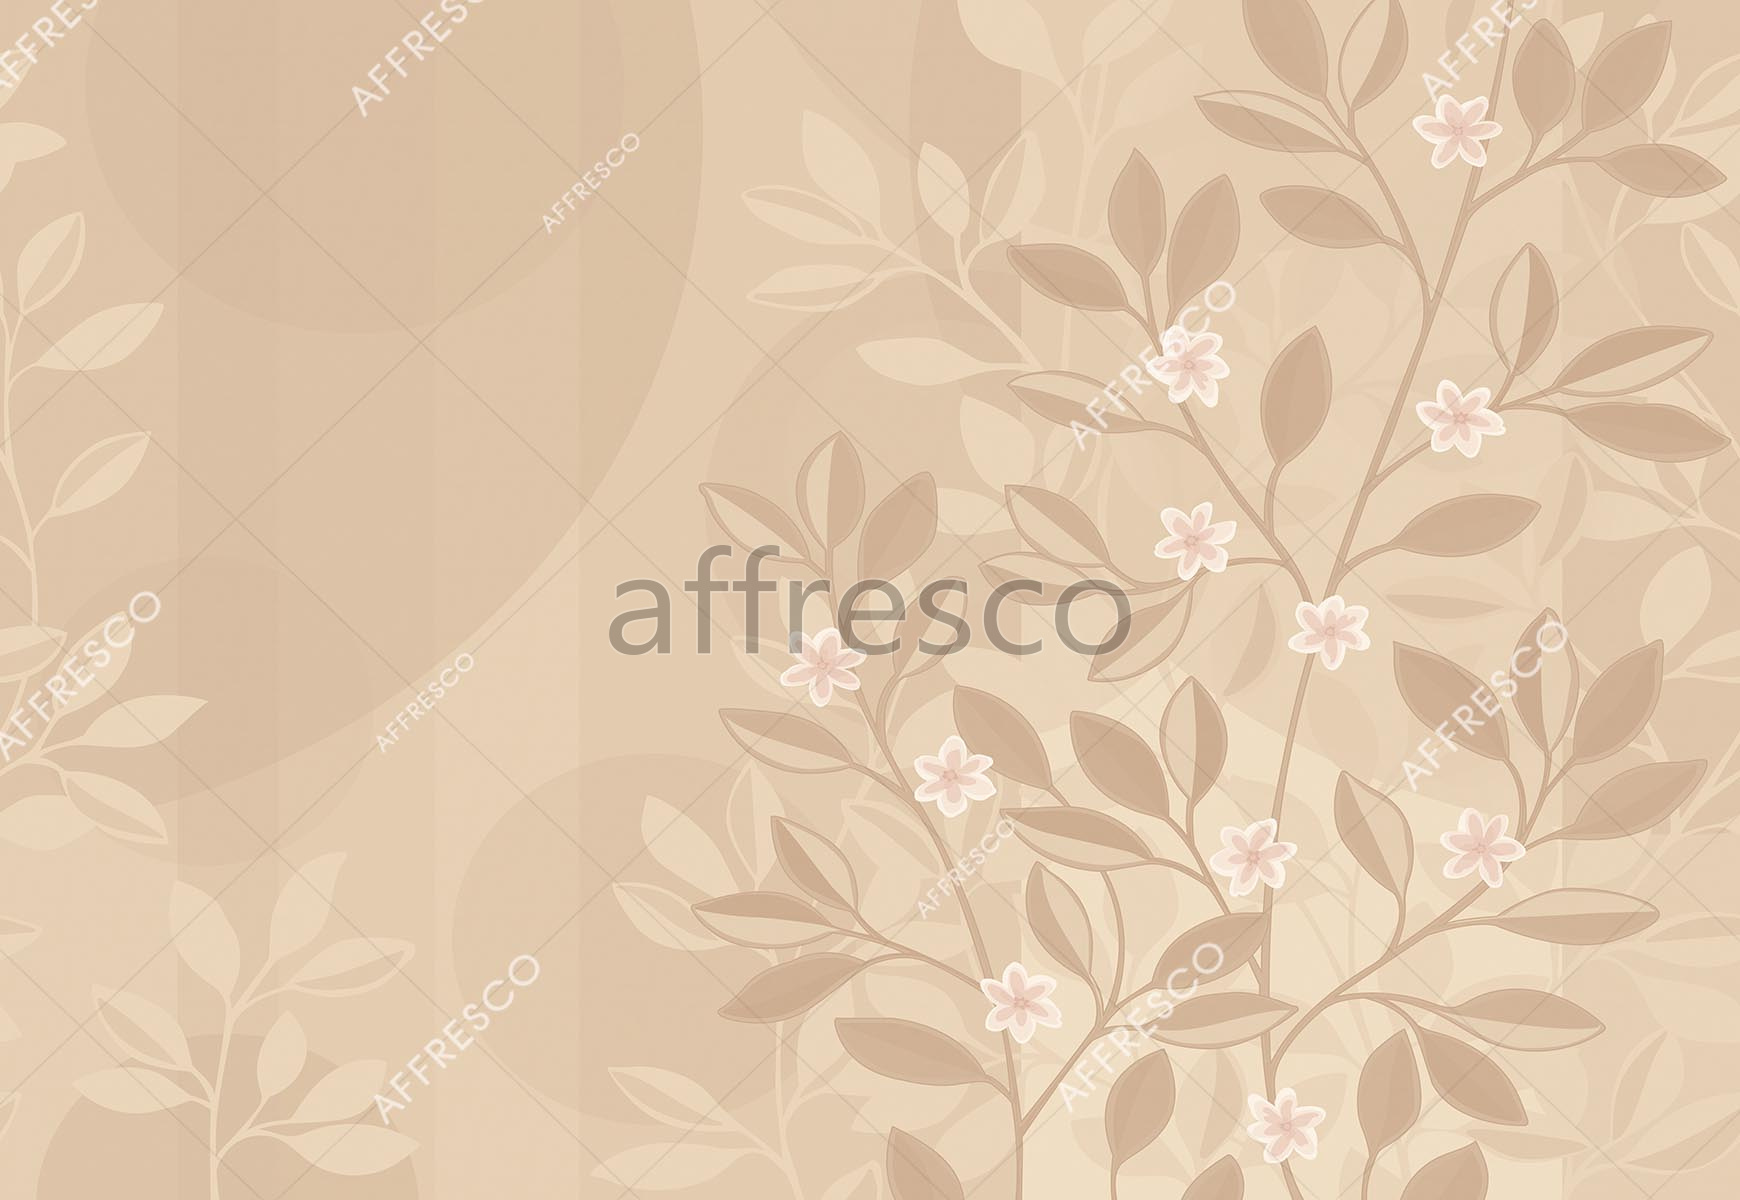 ID139473 | Graphics arts & Ornaments |  | Affresco Factory